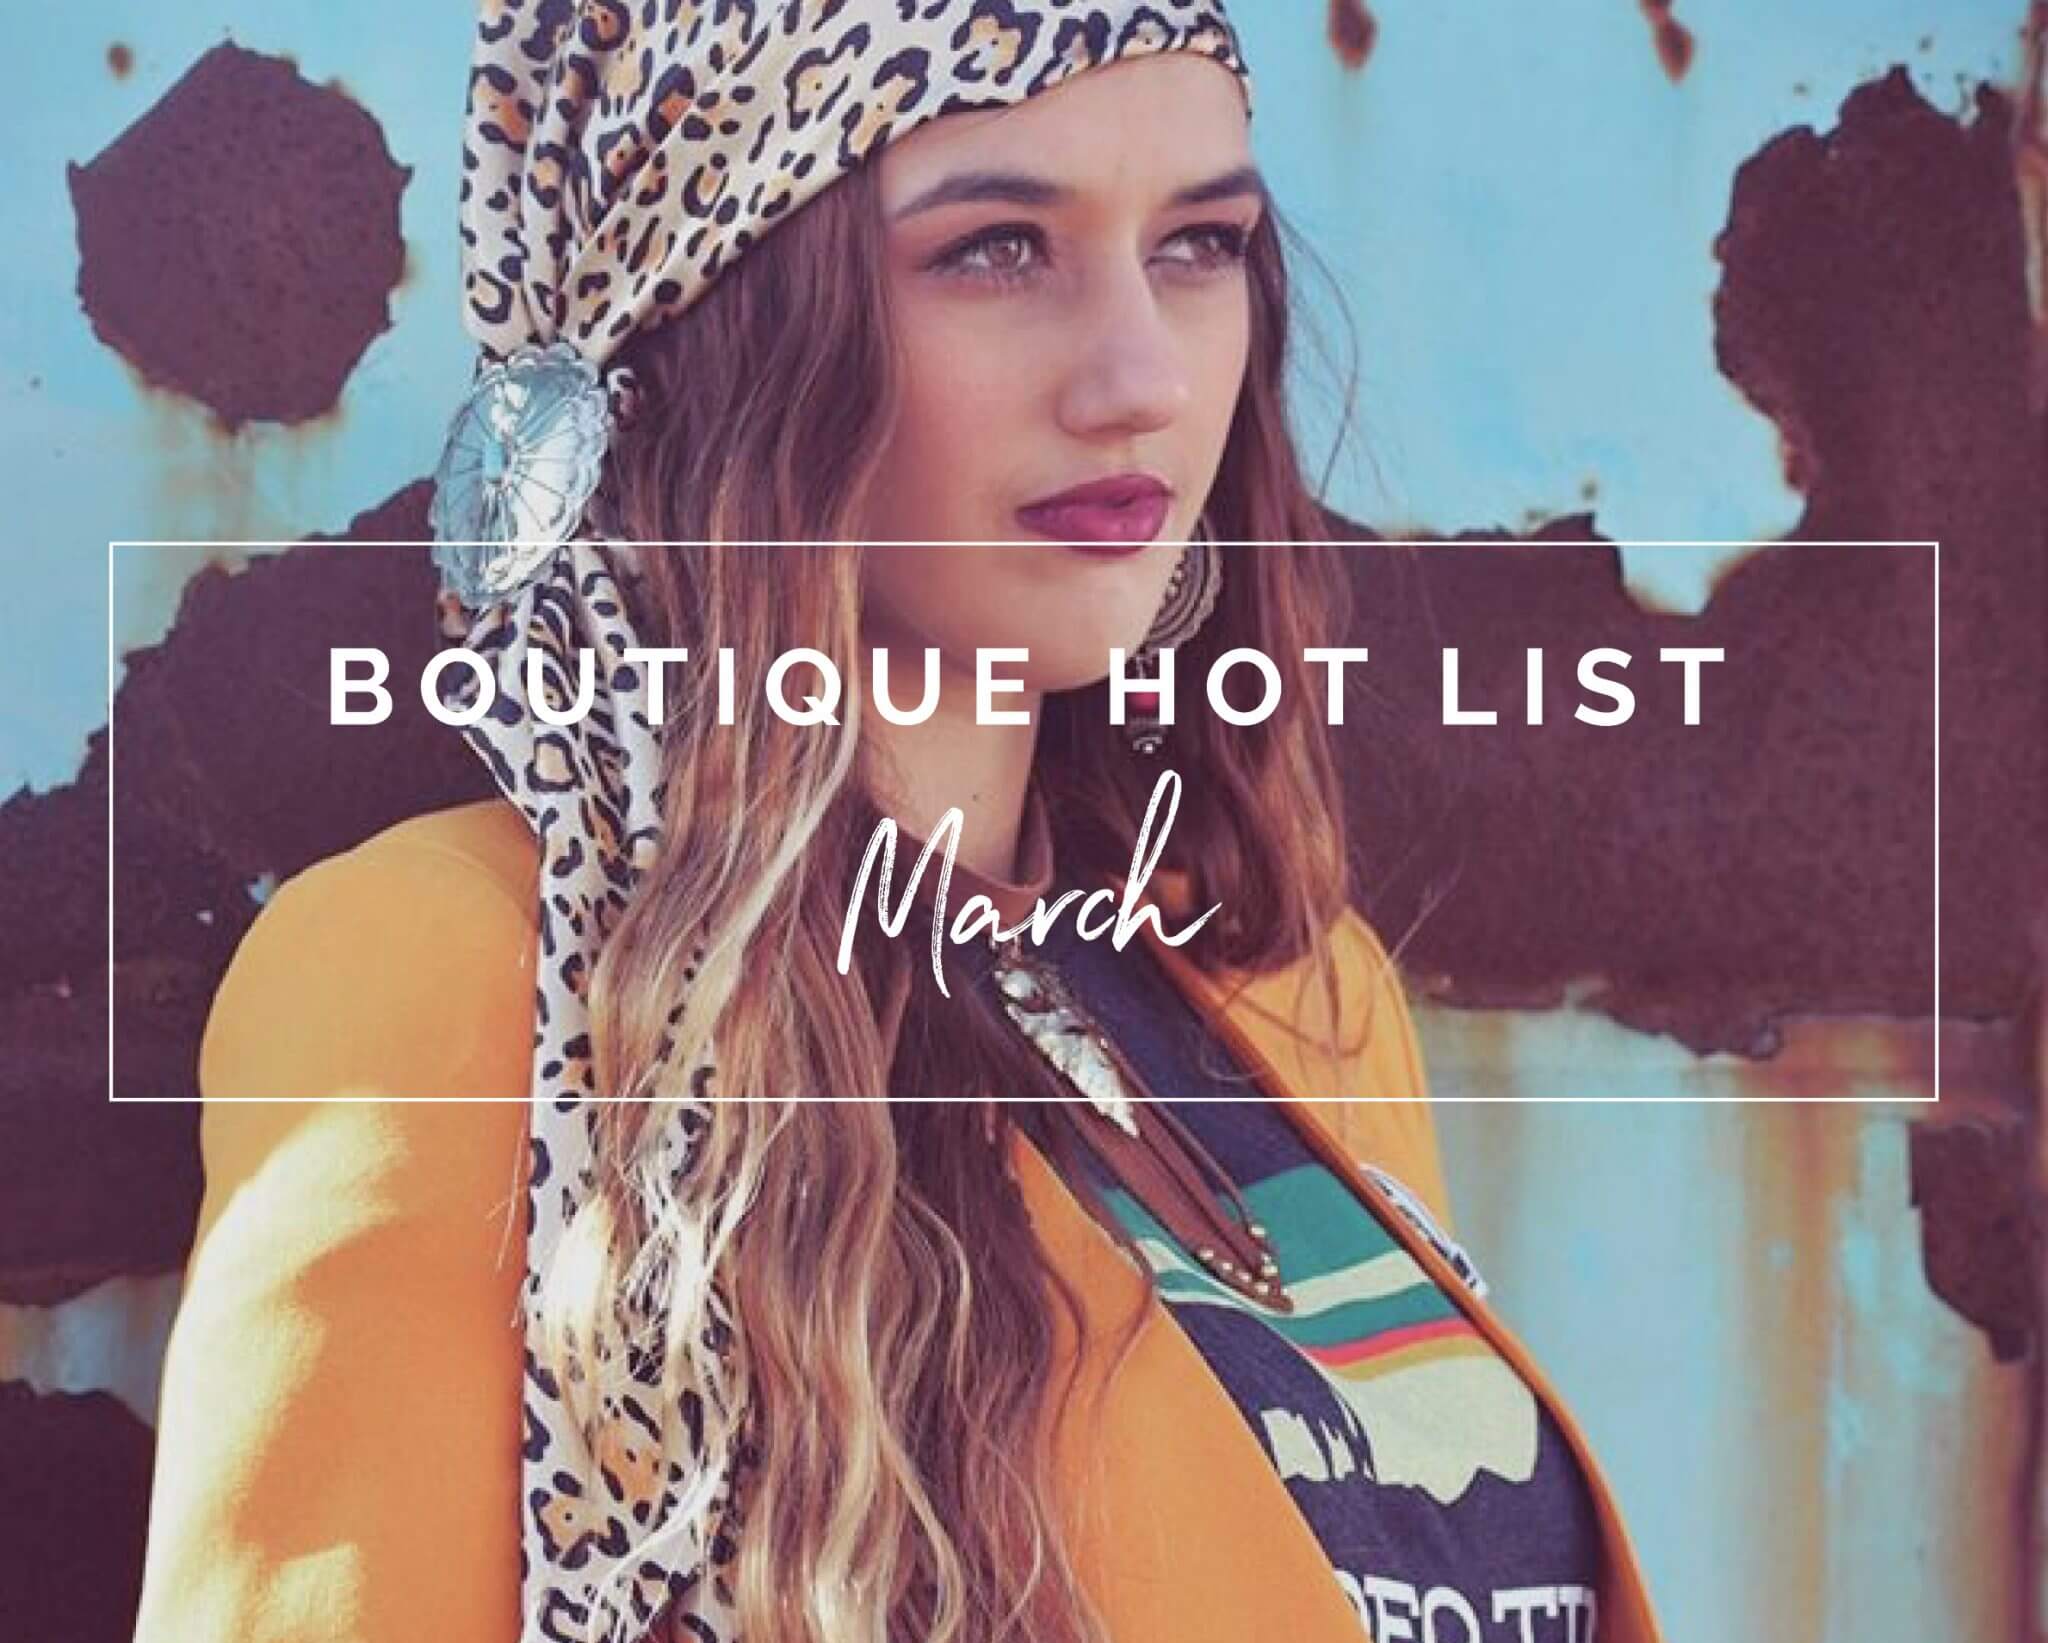 March Boutique Hot LIst | The Boutique Hub